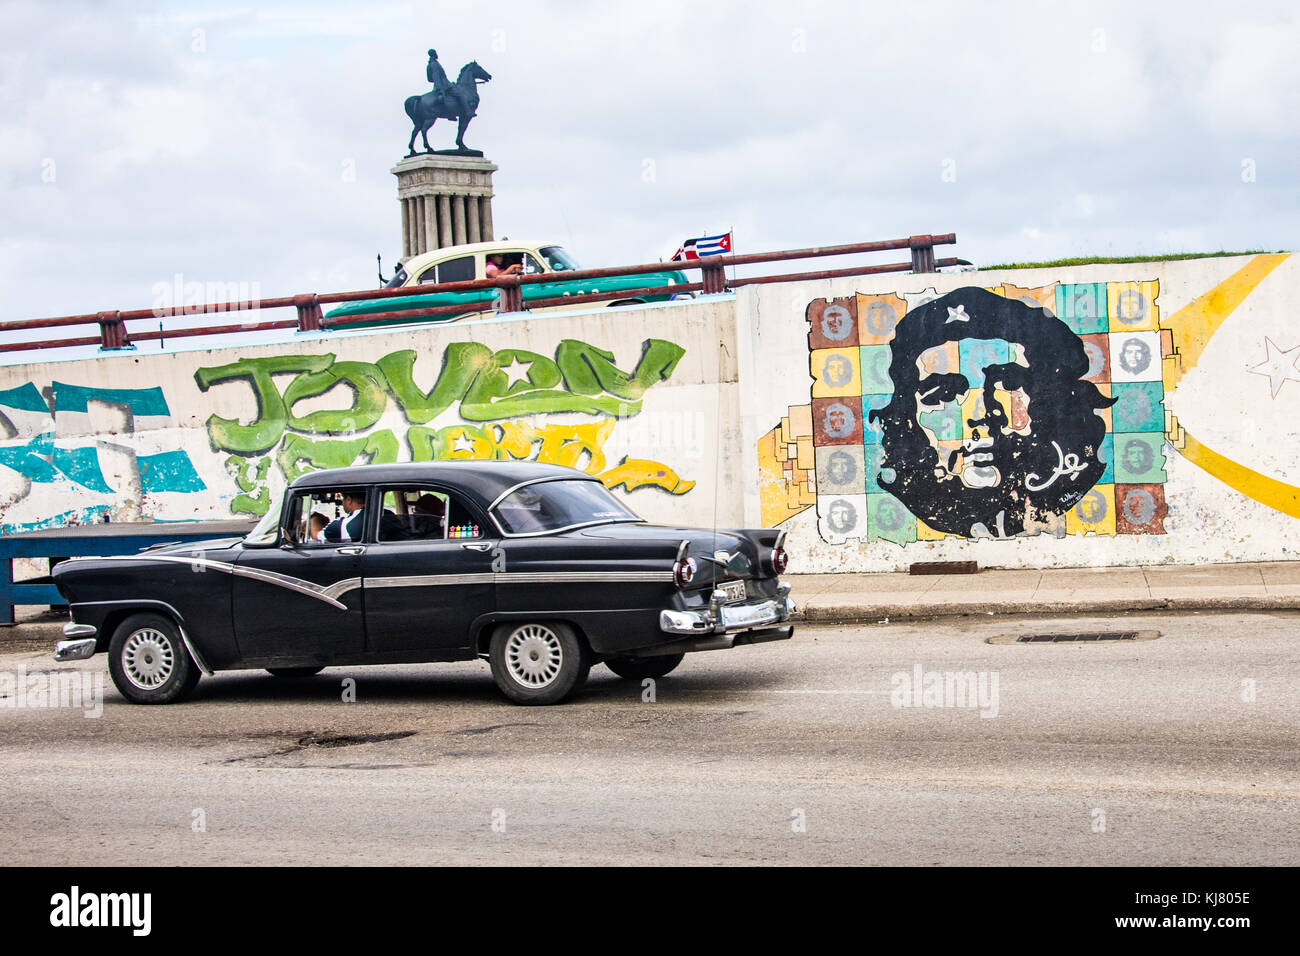 Escena callejera, coches clásicos Americanos y el Che Guevara, La Habana, Cuba Foto de stock